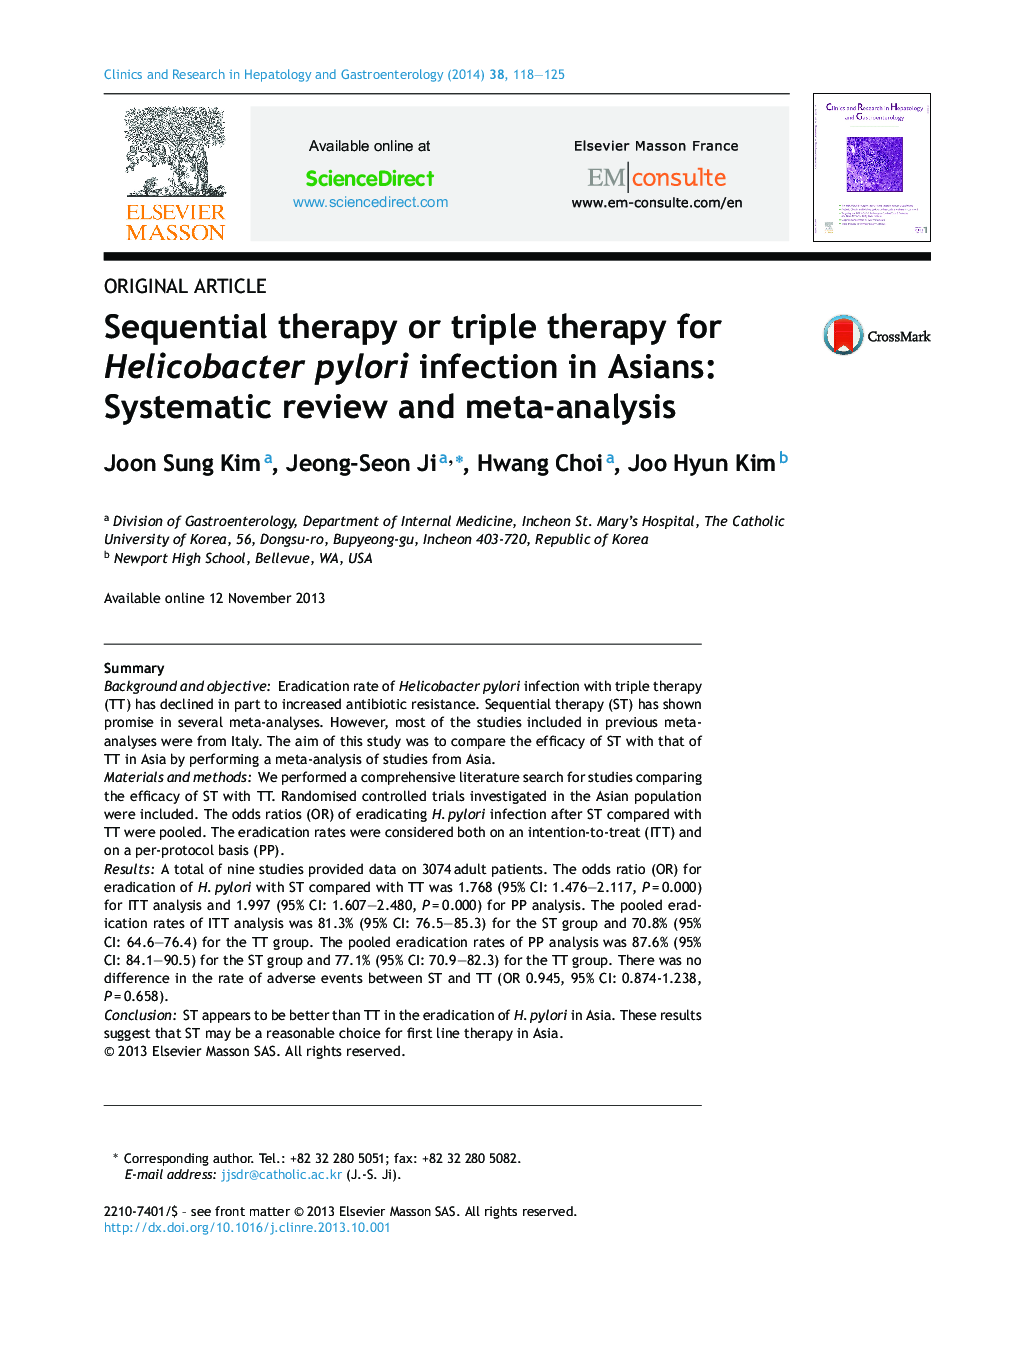 درمان متوالی یا درمان سه گانه برای عفونت هلیکوباکتر پیلوری در آسیا: بررسی سیستماتیک و متاآنالیز 